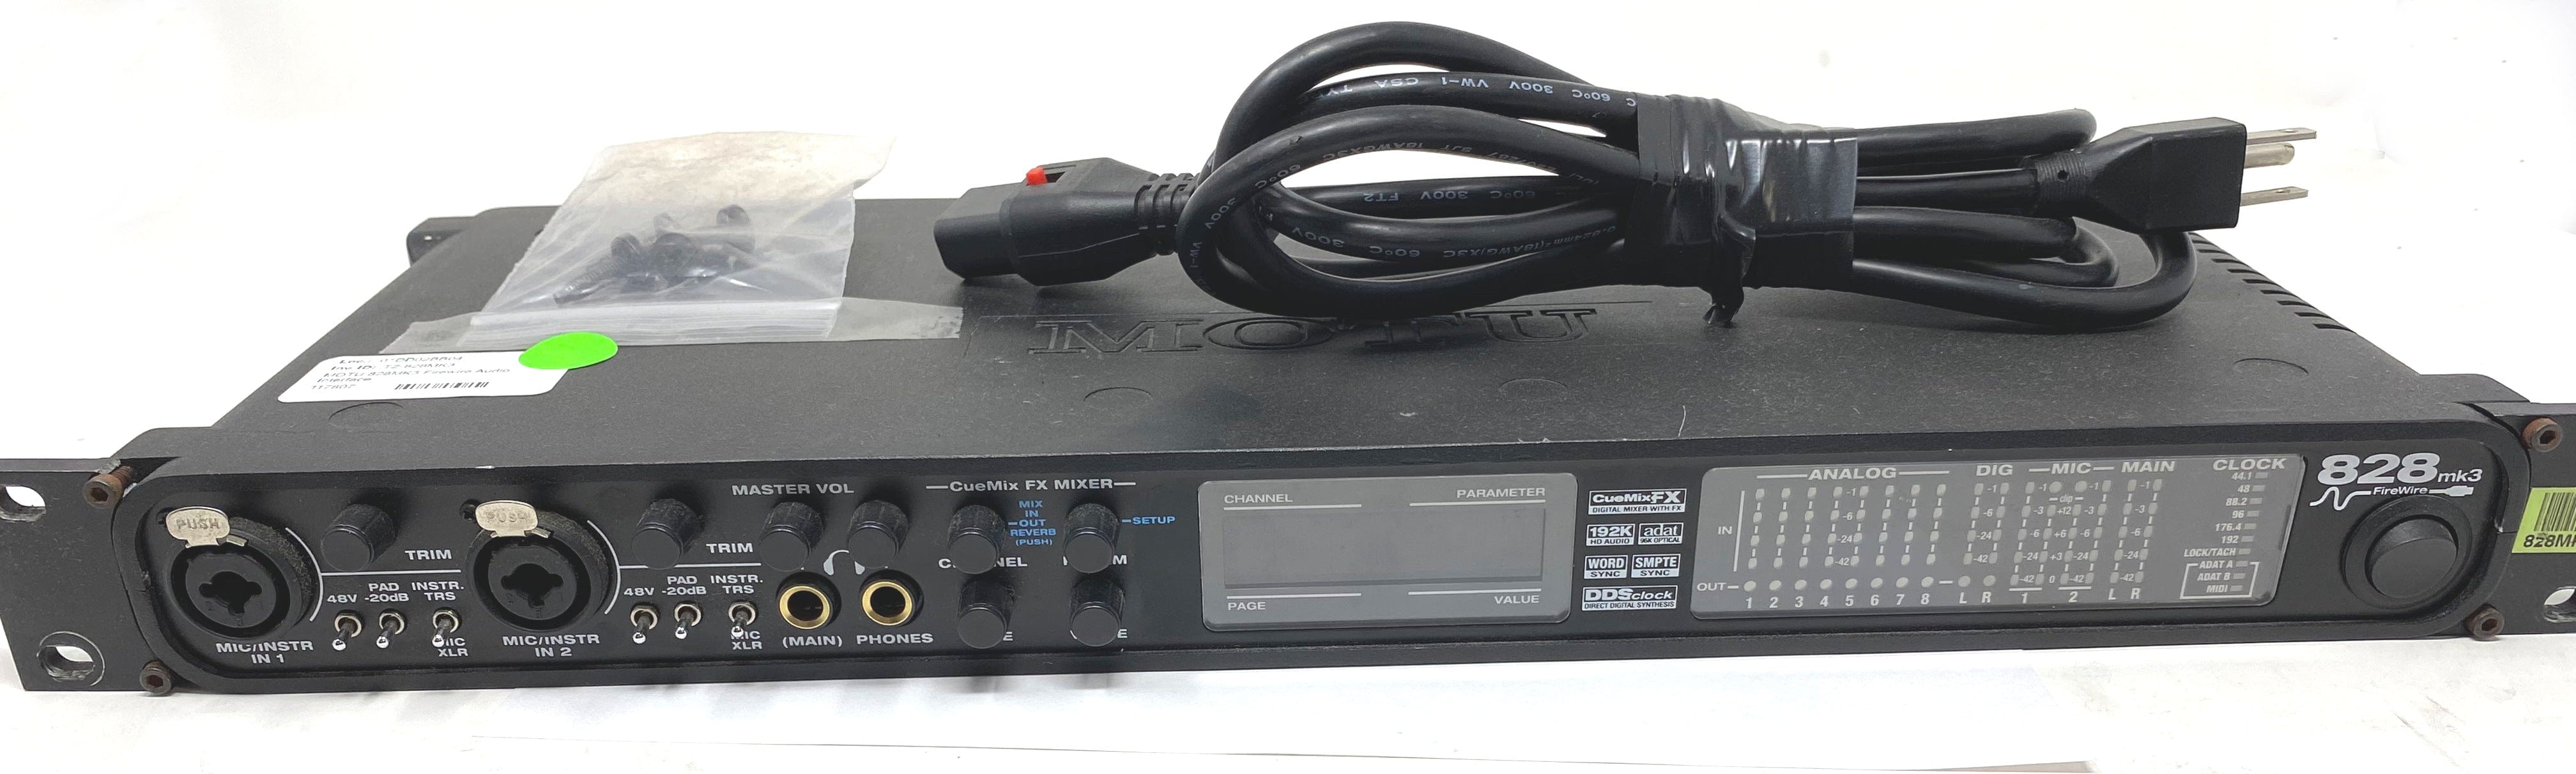 MOTU 828MK3 Firewire Audio Interface | Solotech